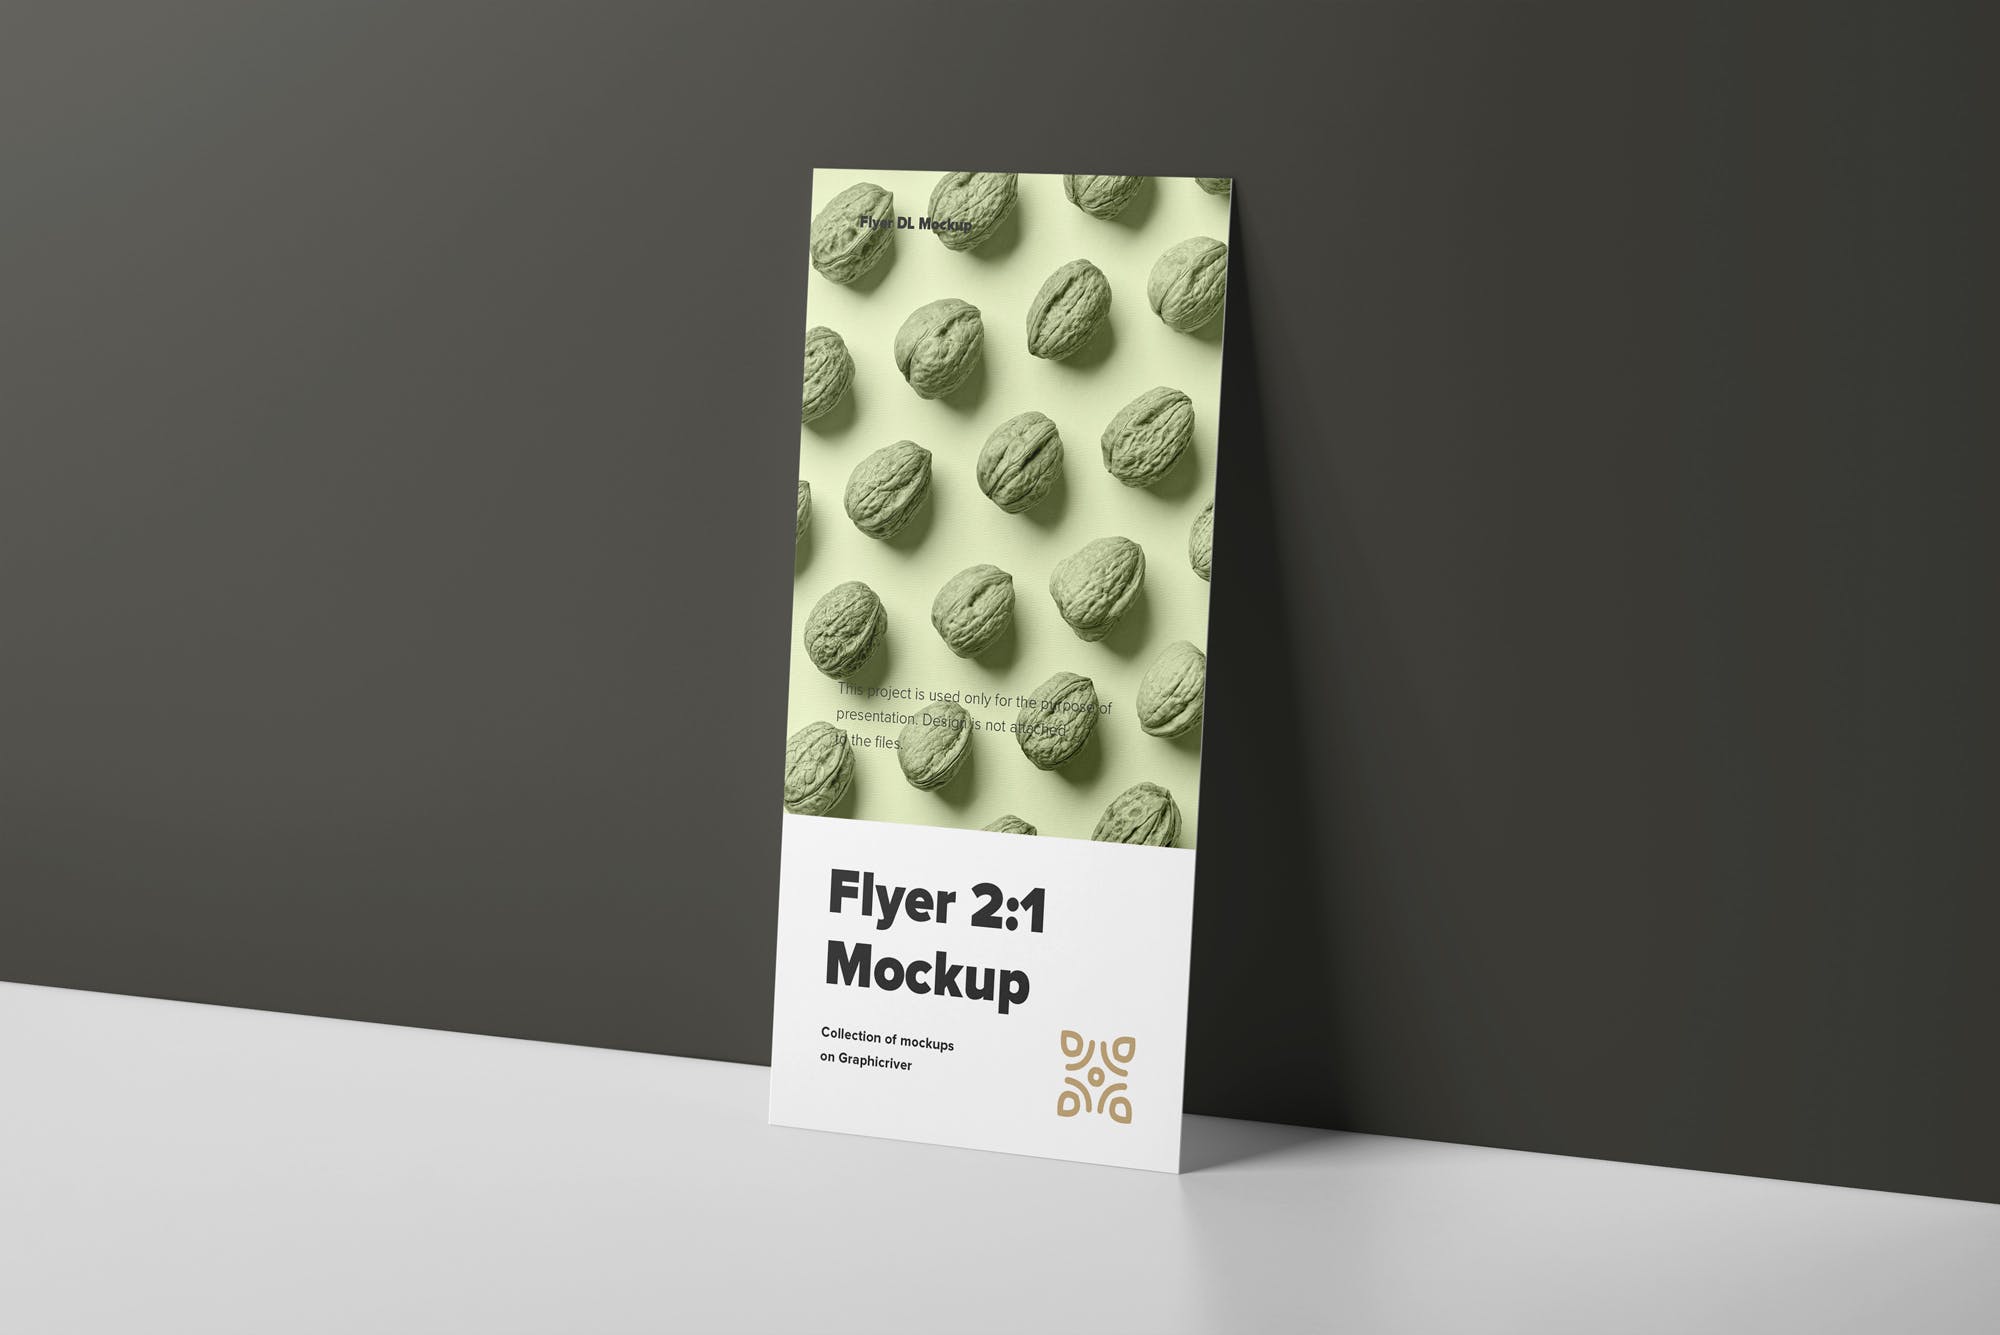 传单设计印刷效果图样机第一素材精选模板 Flyer Mock-up插图(7)